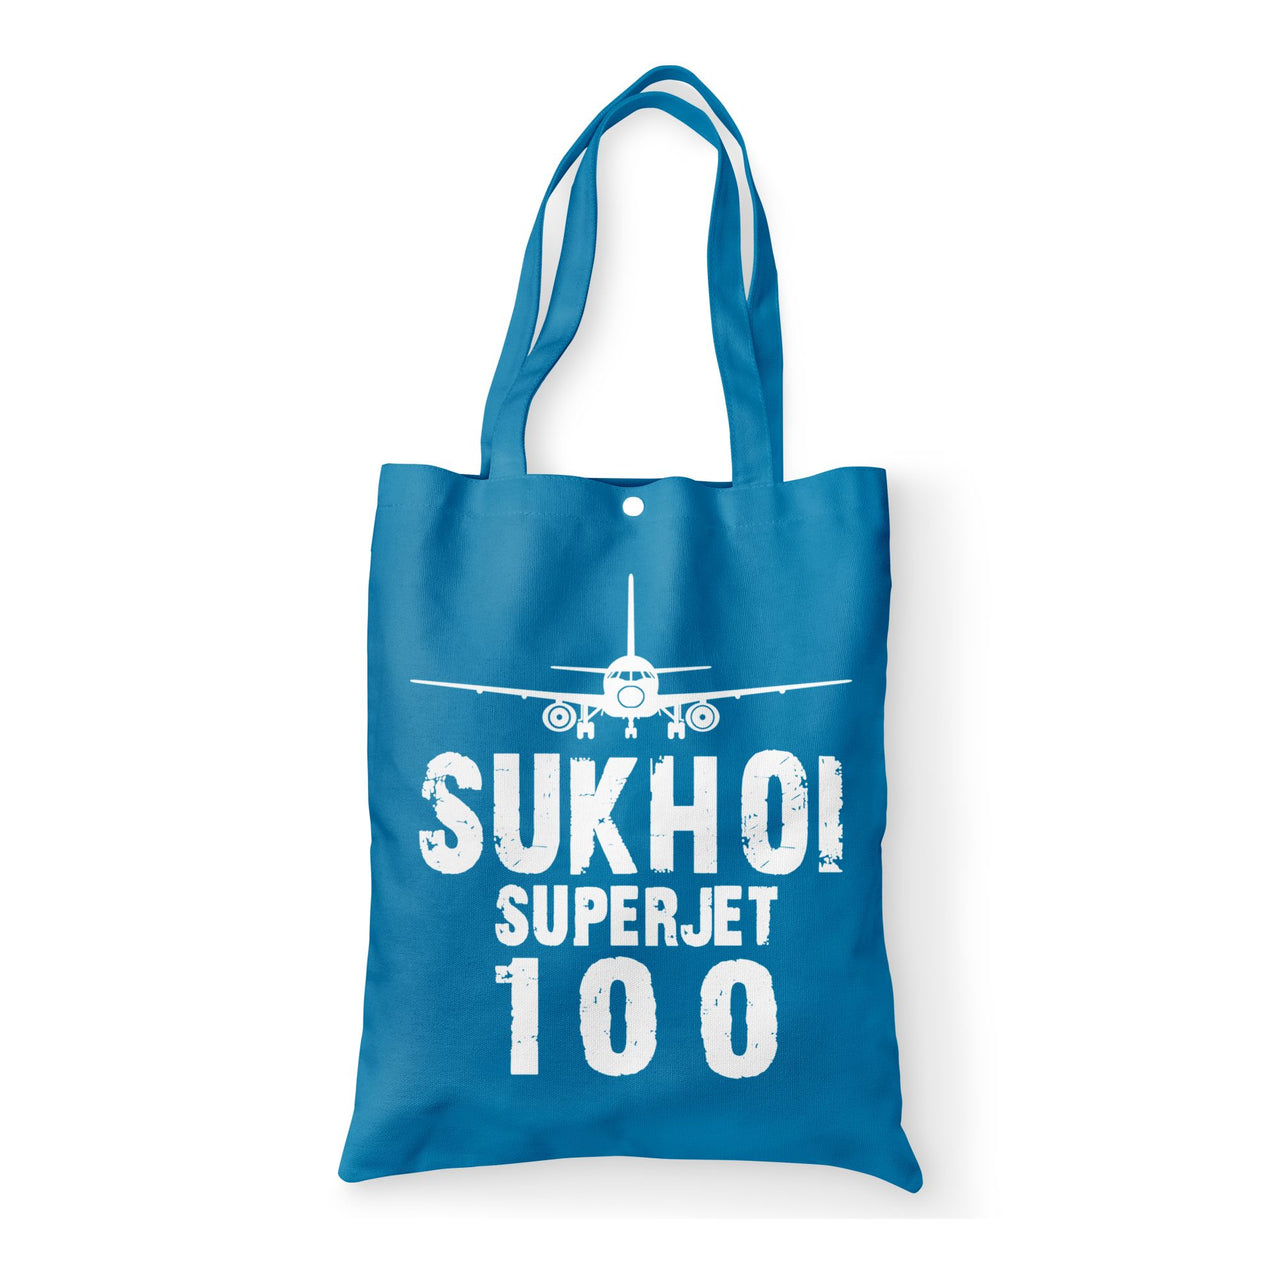 Sukhoi Superjet 100 & Plane Designed Tote Bags